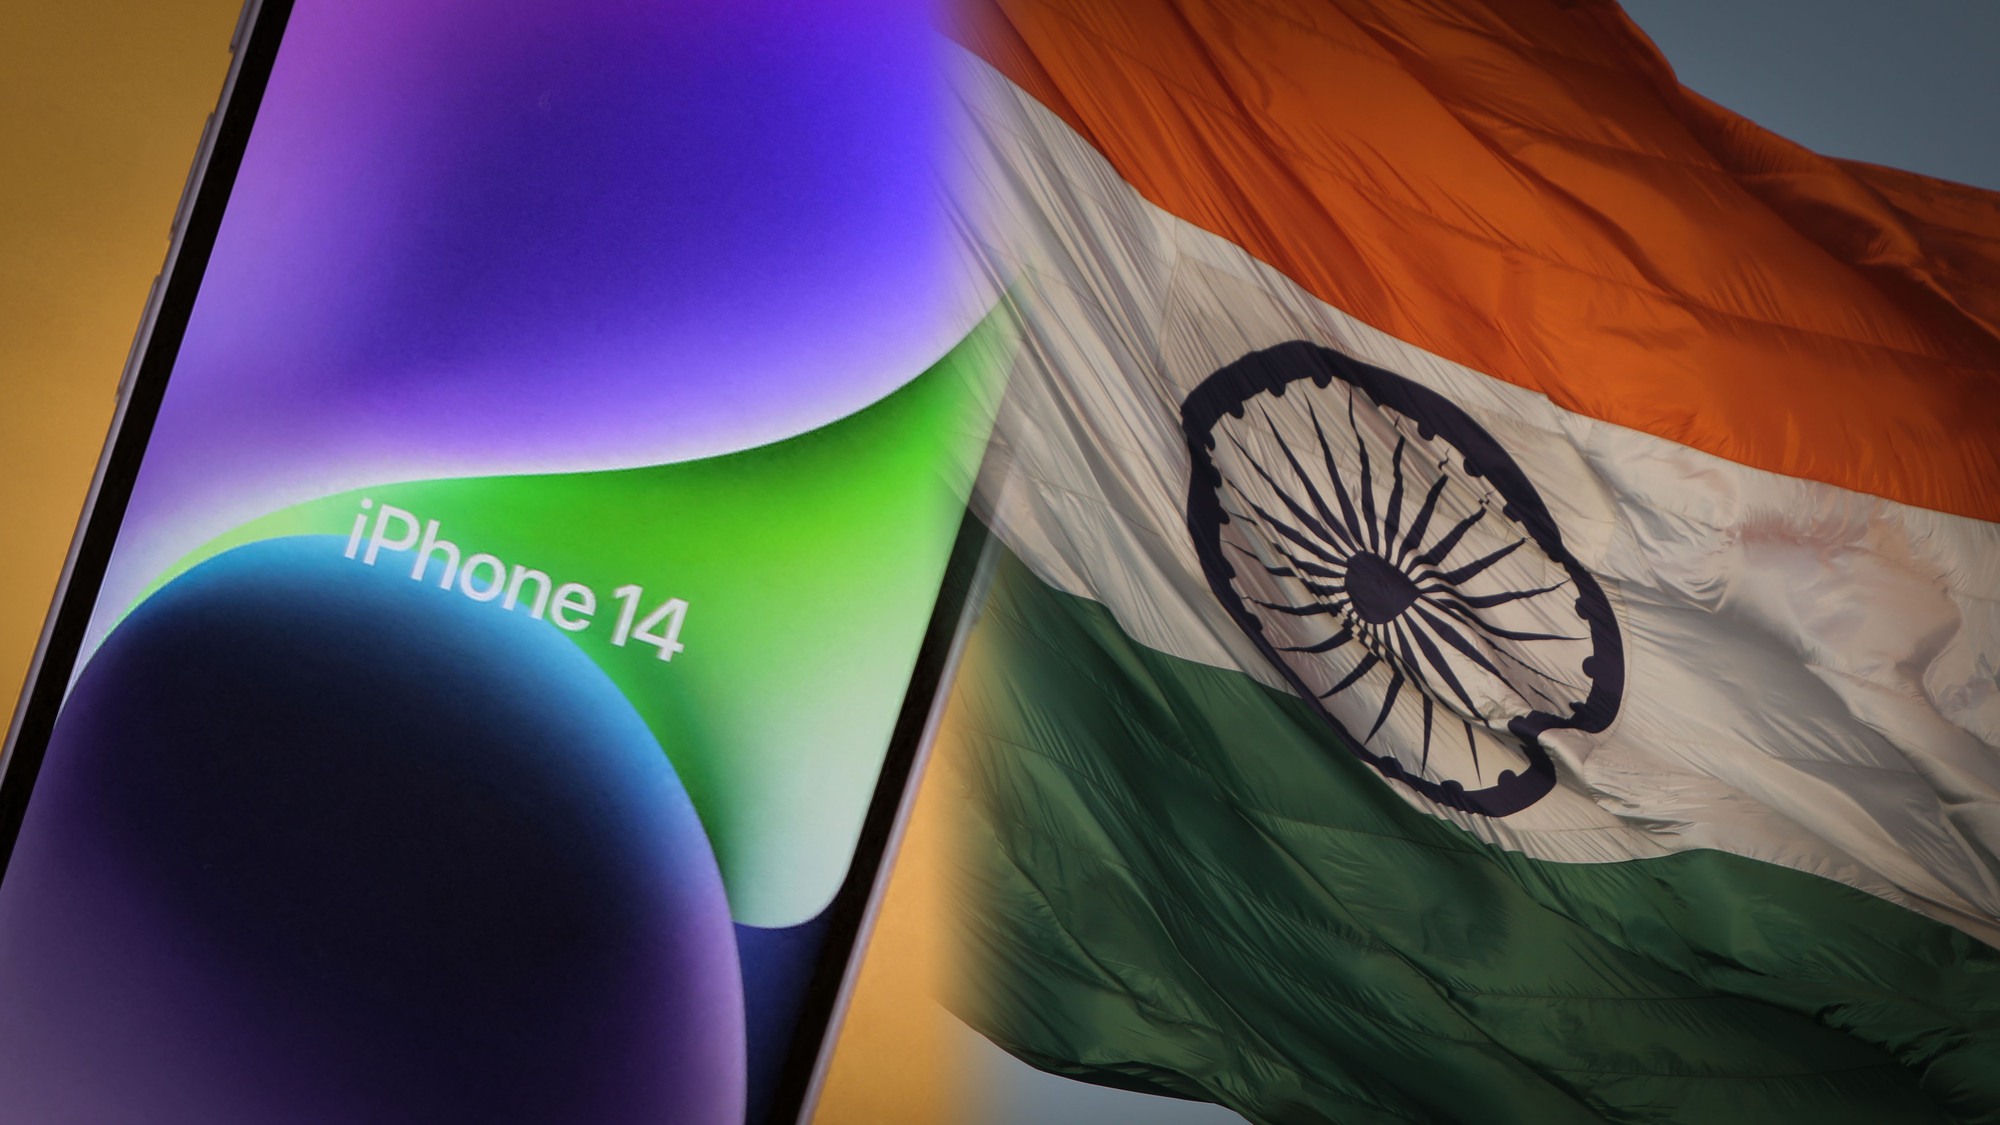 Apple sẽ bán điện thoại do Ấn Độ sản xuất trong nước, nhưng cũng xuất khẩu sang các thị trường khác trên toàn cầu. Khách hàng ở Ấn Độ sẽ bắt đầu nhận được các thiết bị sản xuất trong nước trong vài ngày tới. Ảnh: @AFP.